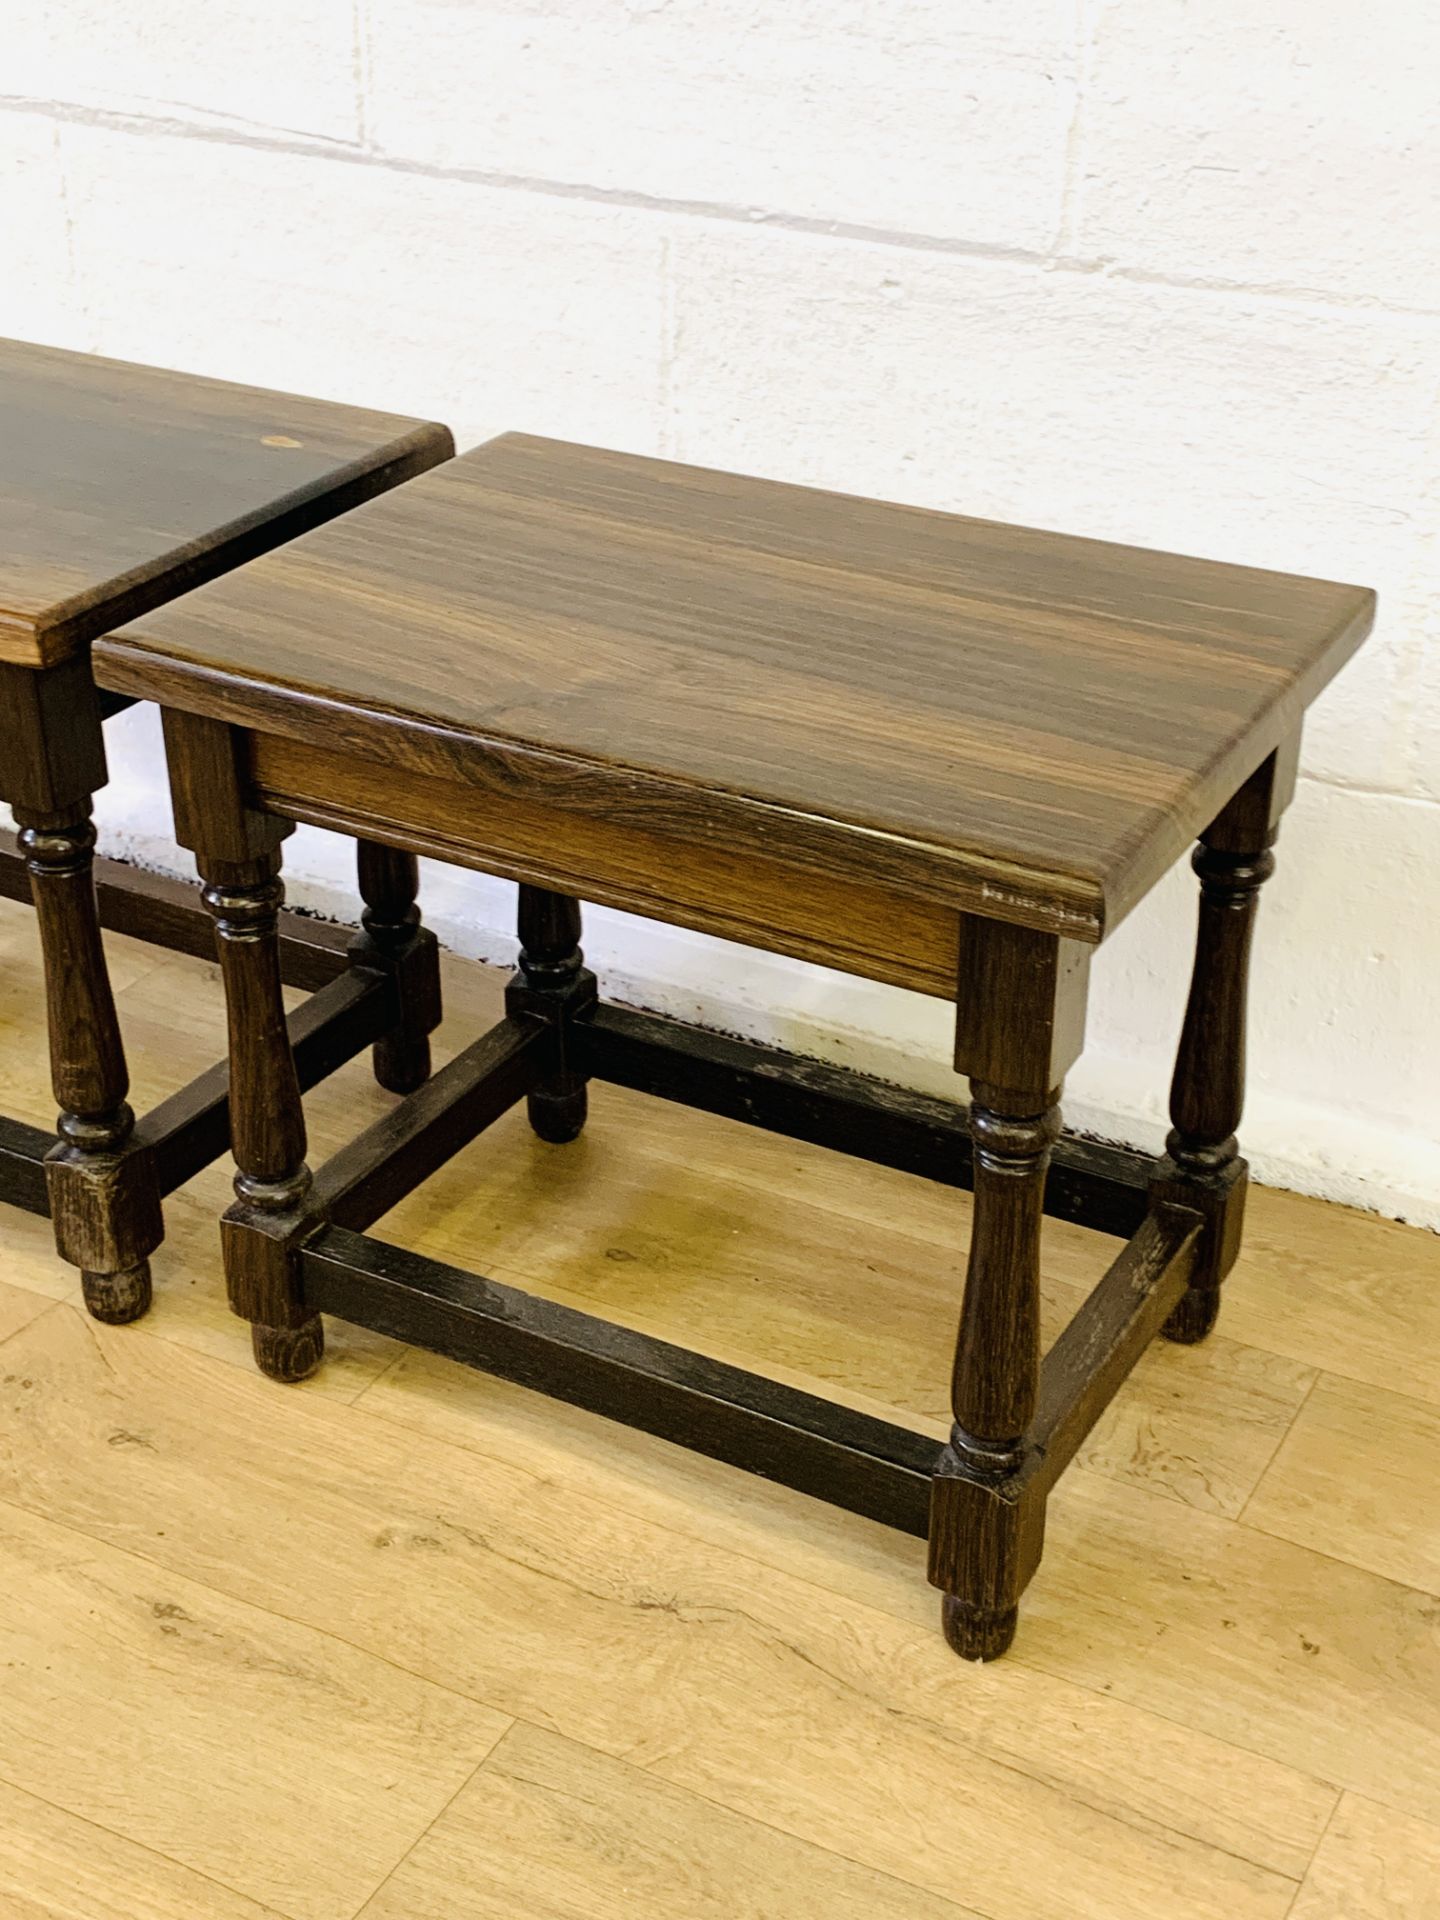 Two bog oak side tables - Image 2 of 4